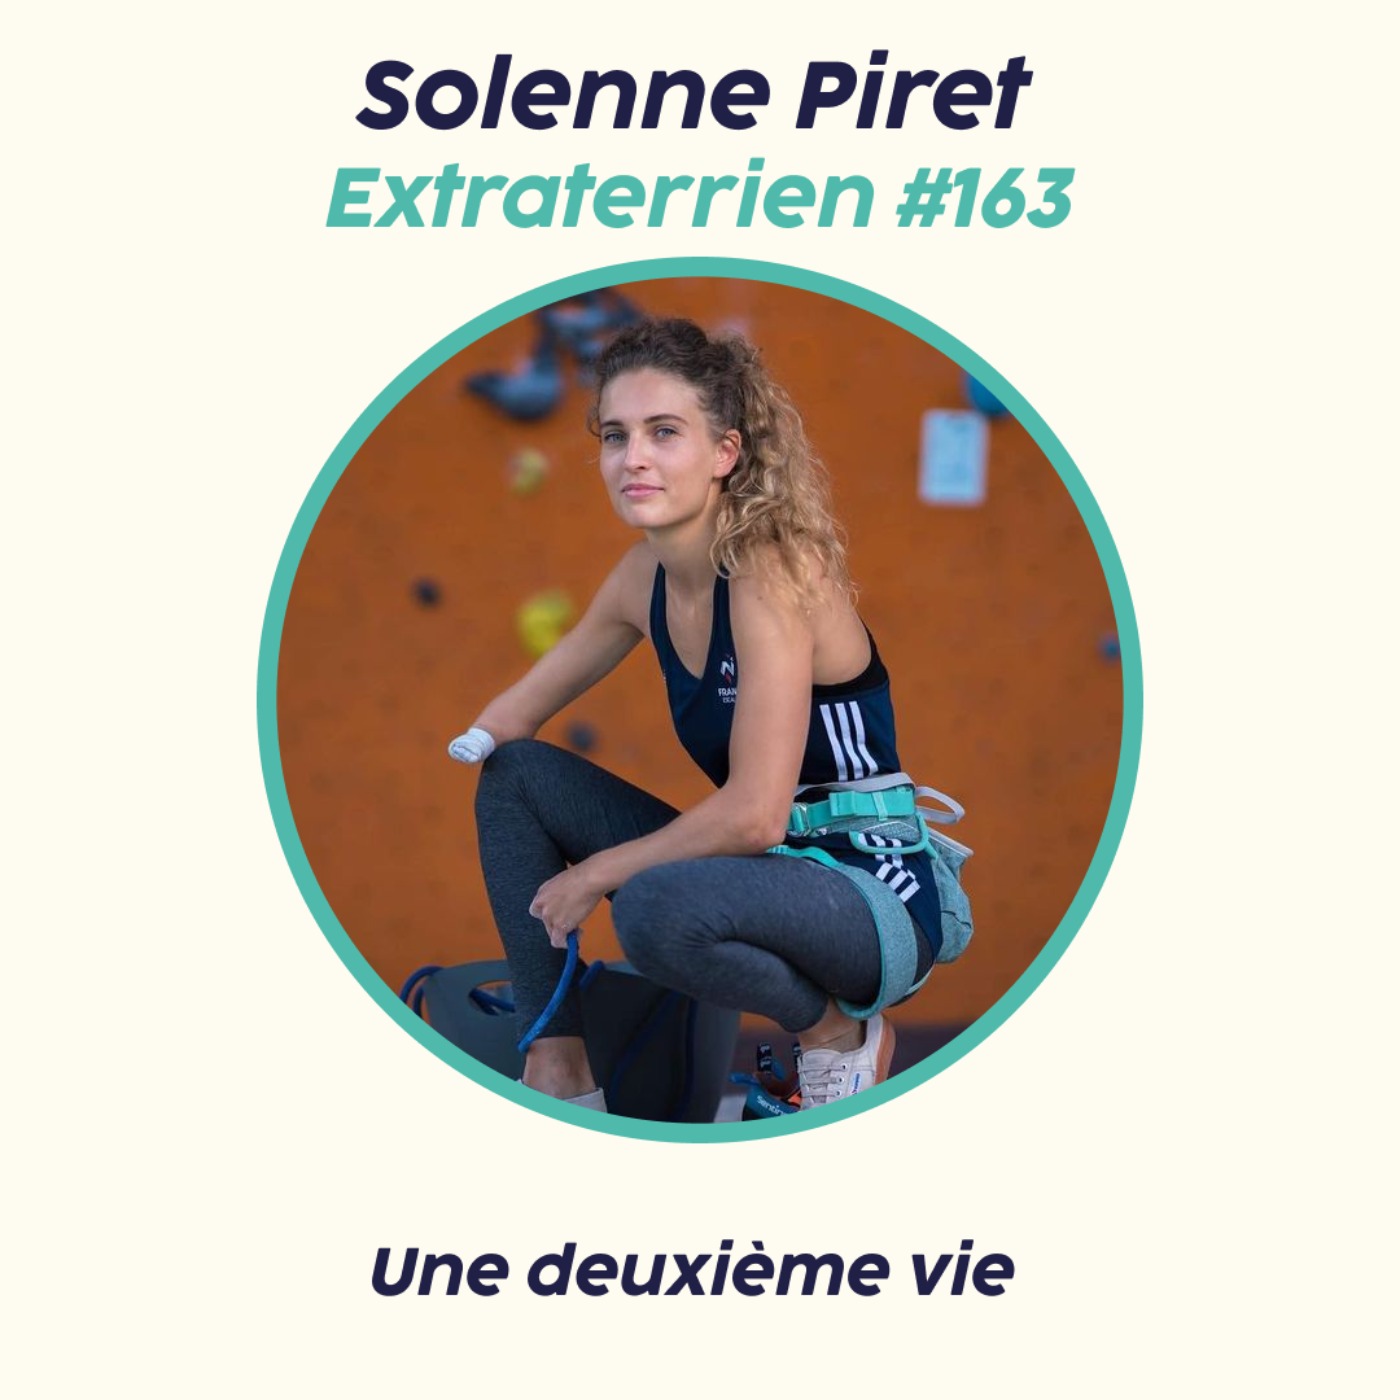 Solenne Piret - Une deuxième vie grâce à l’escalade